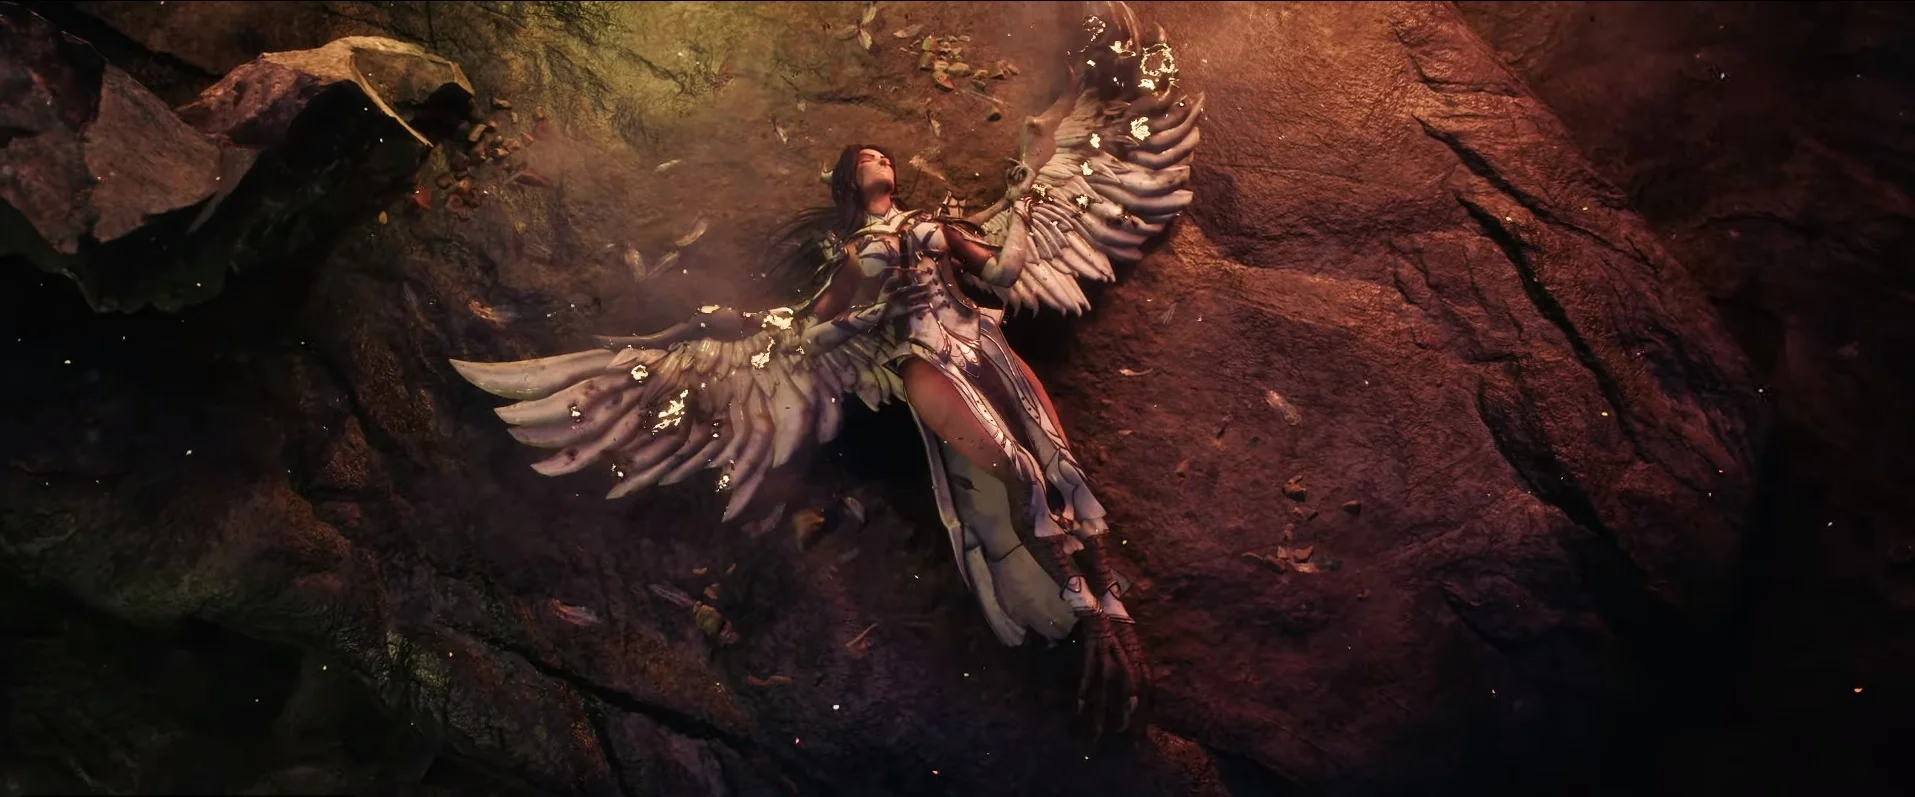 Vengeful Spirit стала героиней конкурсного ролика к The International 2019 по Dota 2 - фото 1